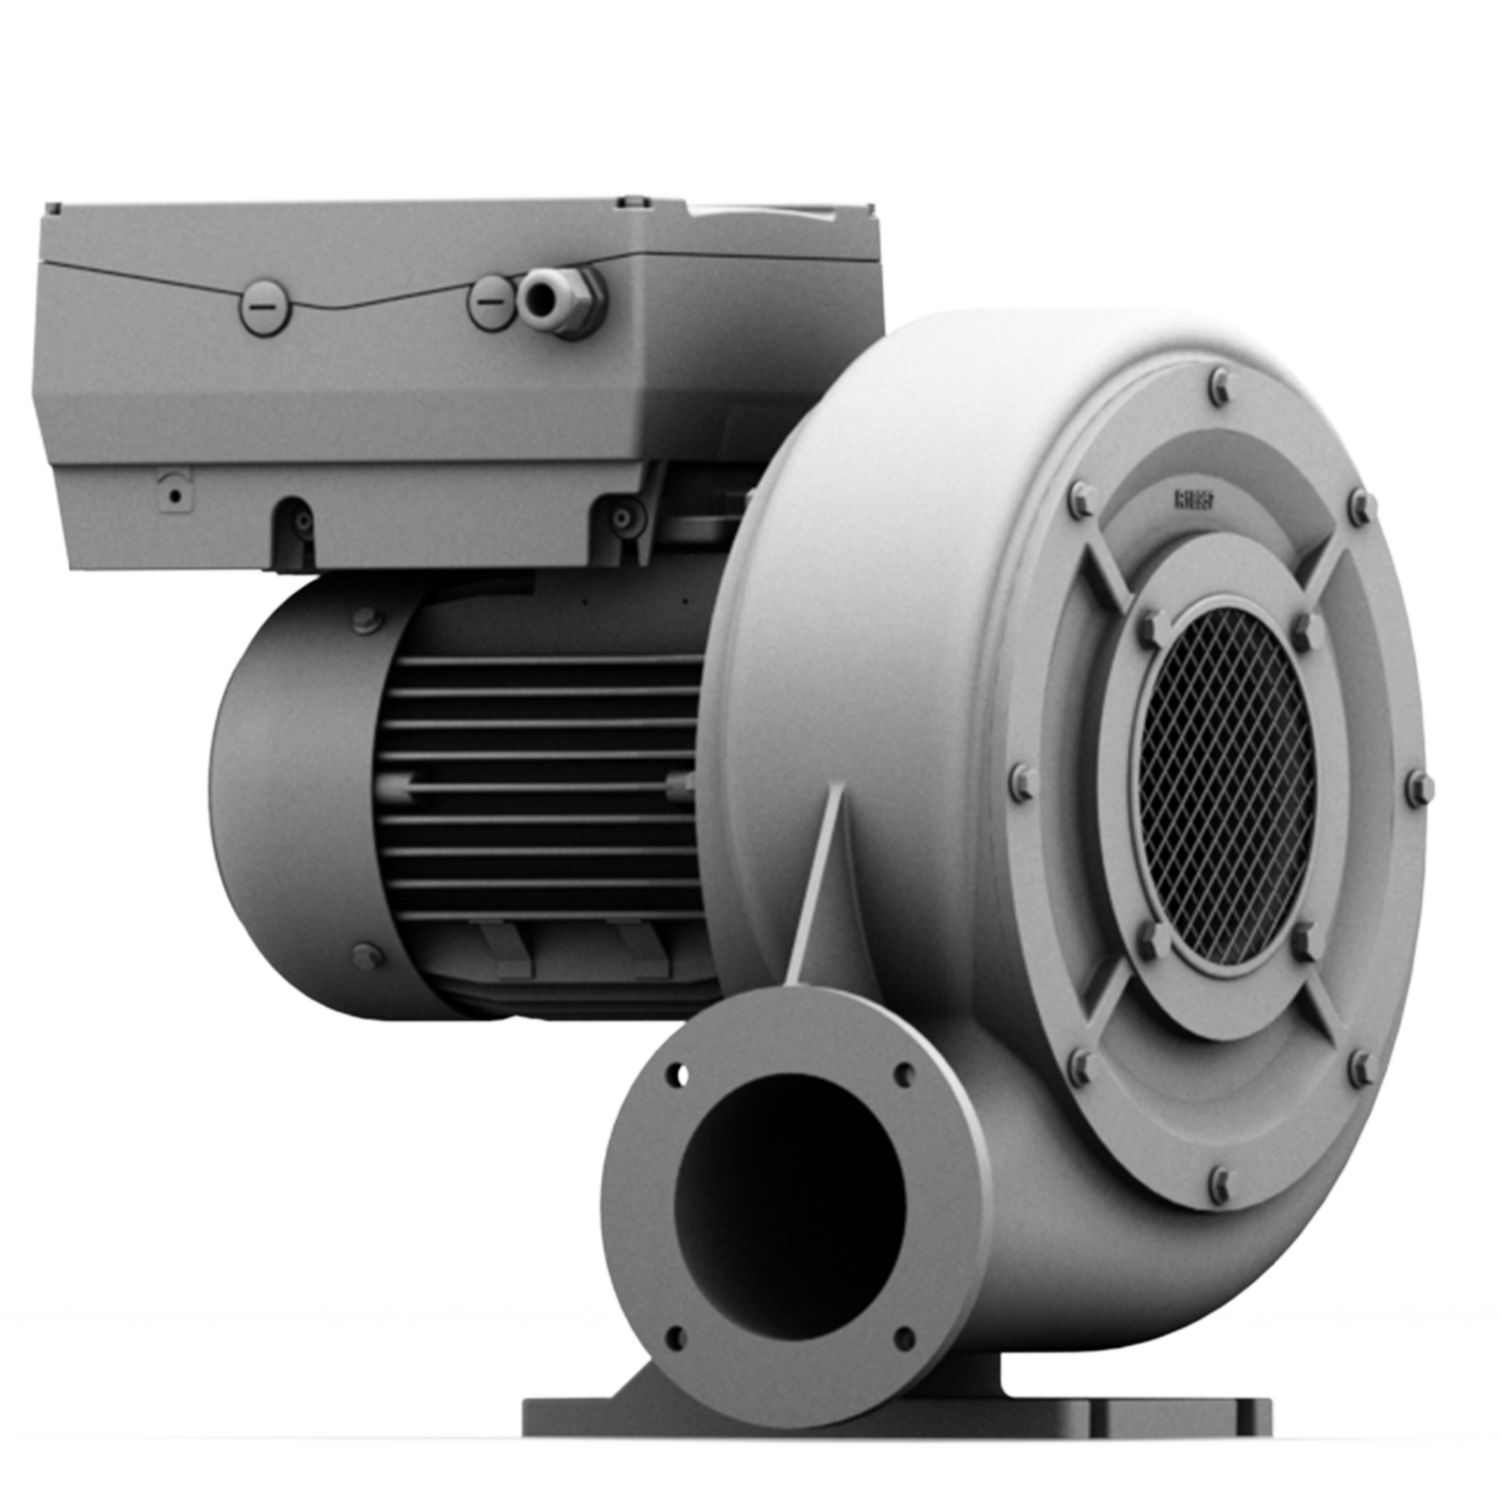 Hrd 16t fu - ventilateur atex - elektror - jusqu'à 97 m³/min_0